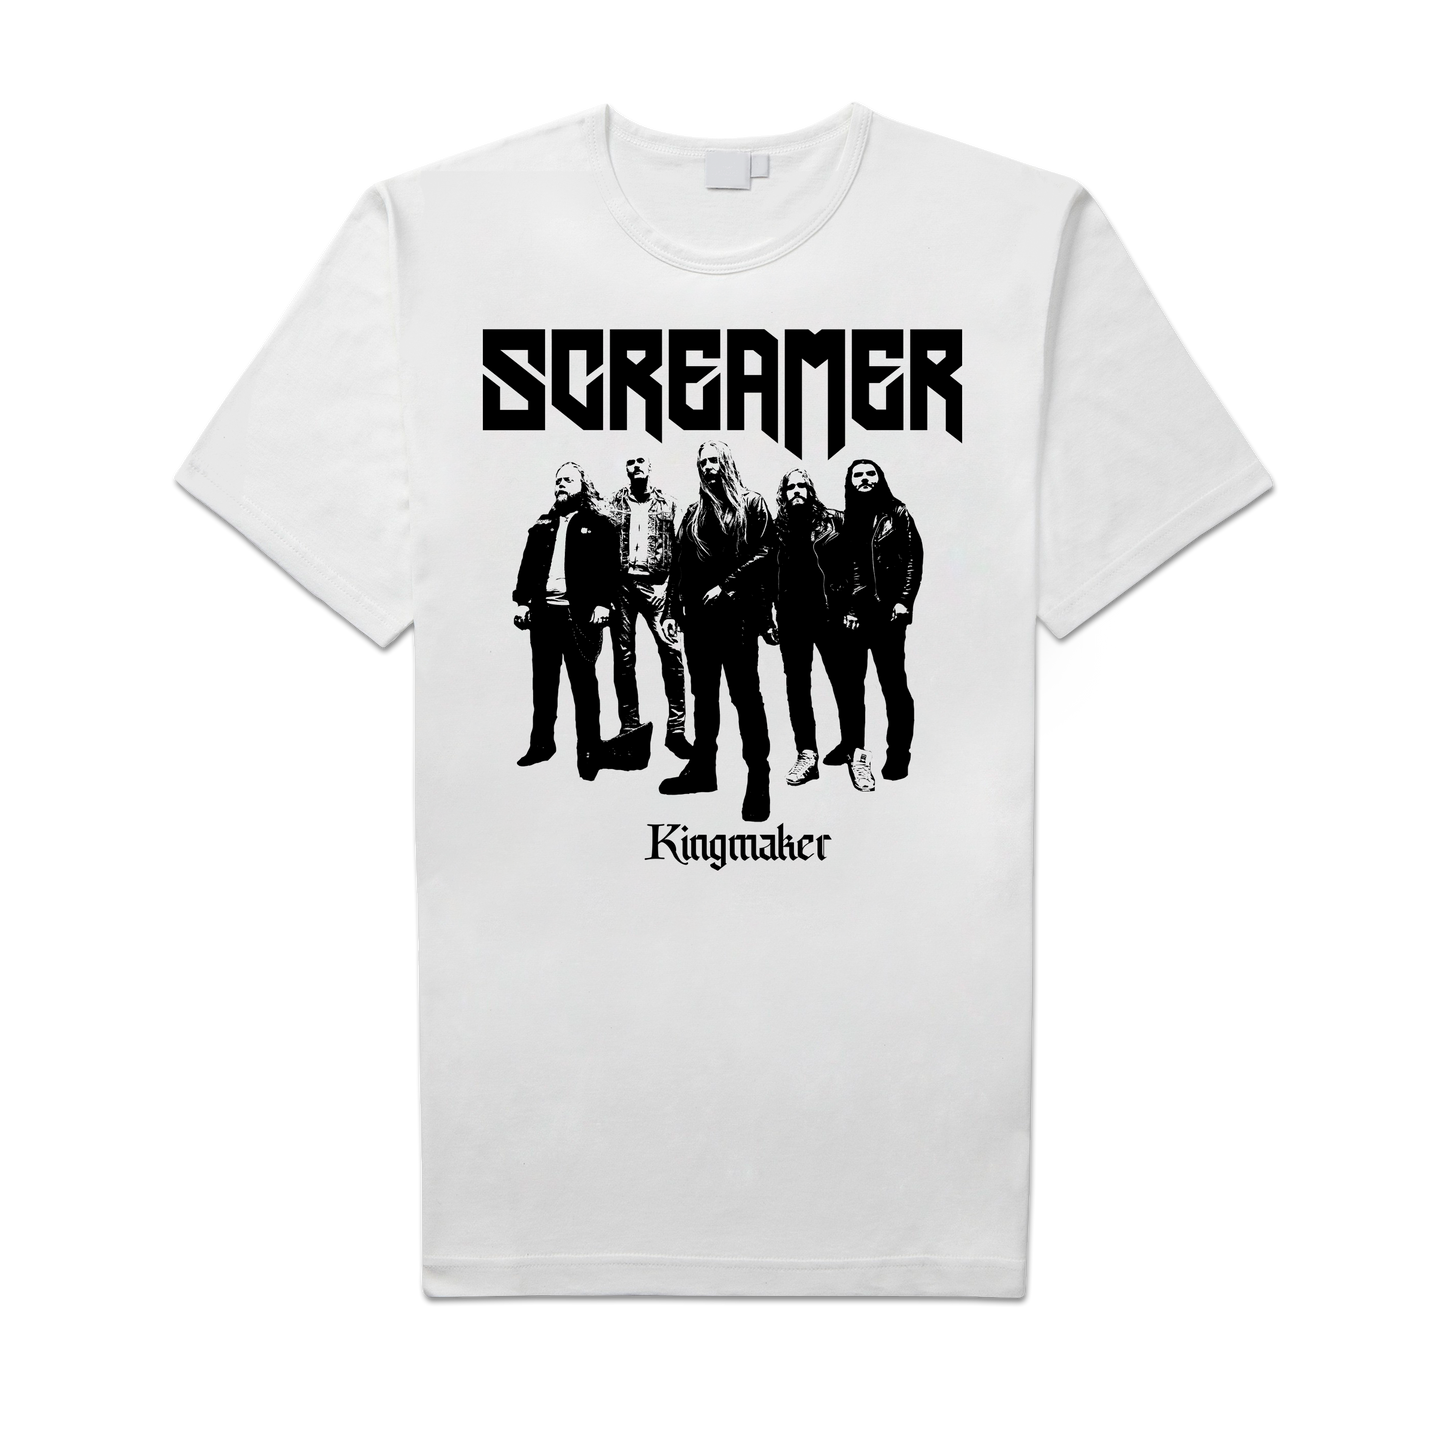 Screamer "Kingmaker" Shirt